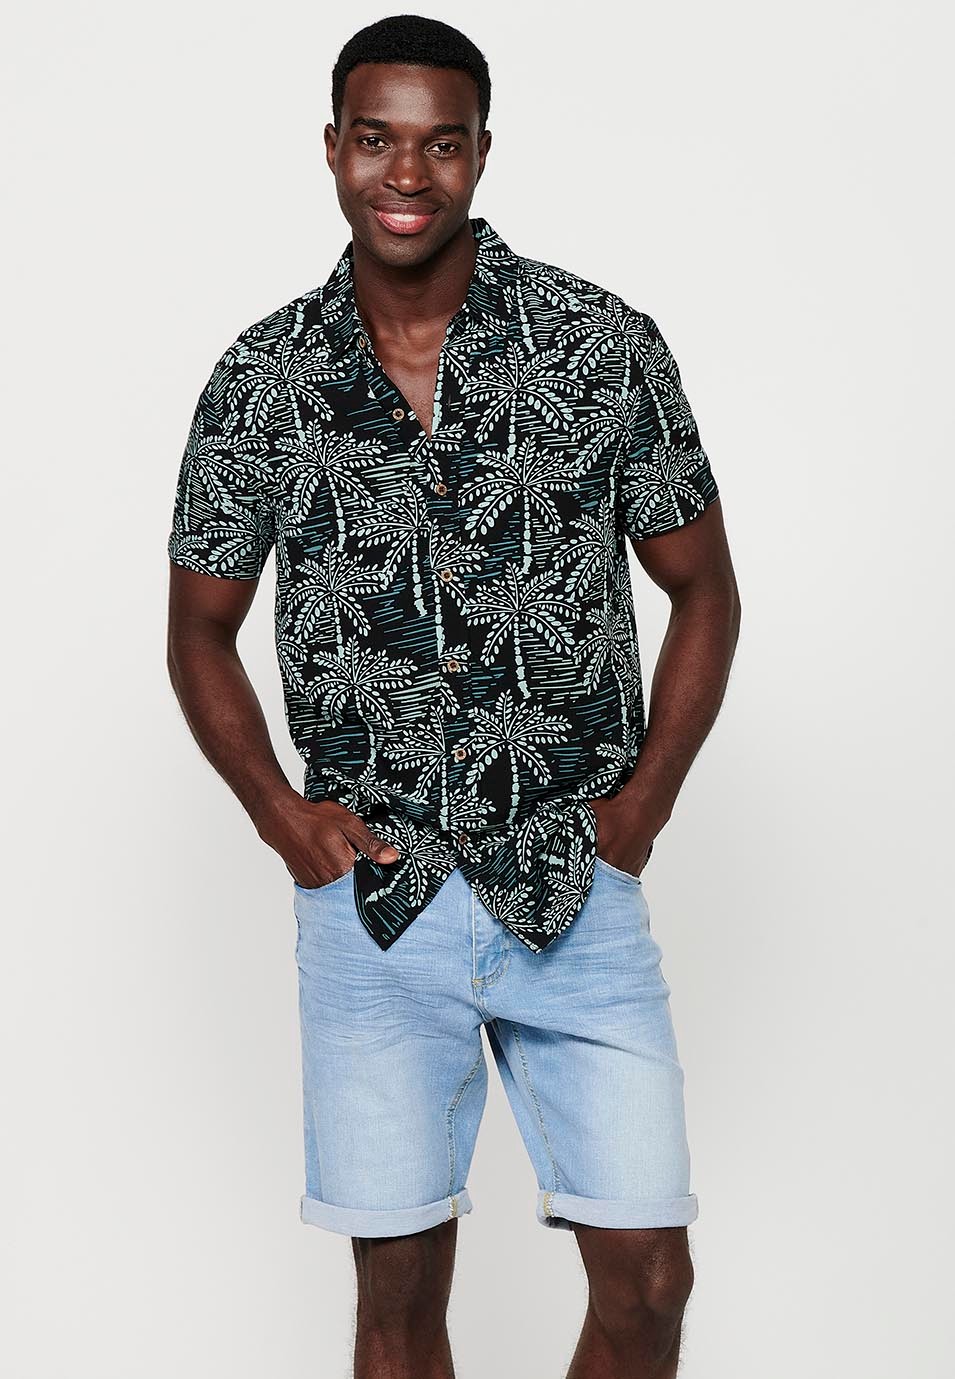 Camisa de màniga curta amb coll camisero i estampat floral tropical, multicolor per a homes